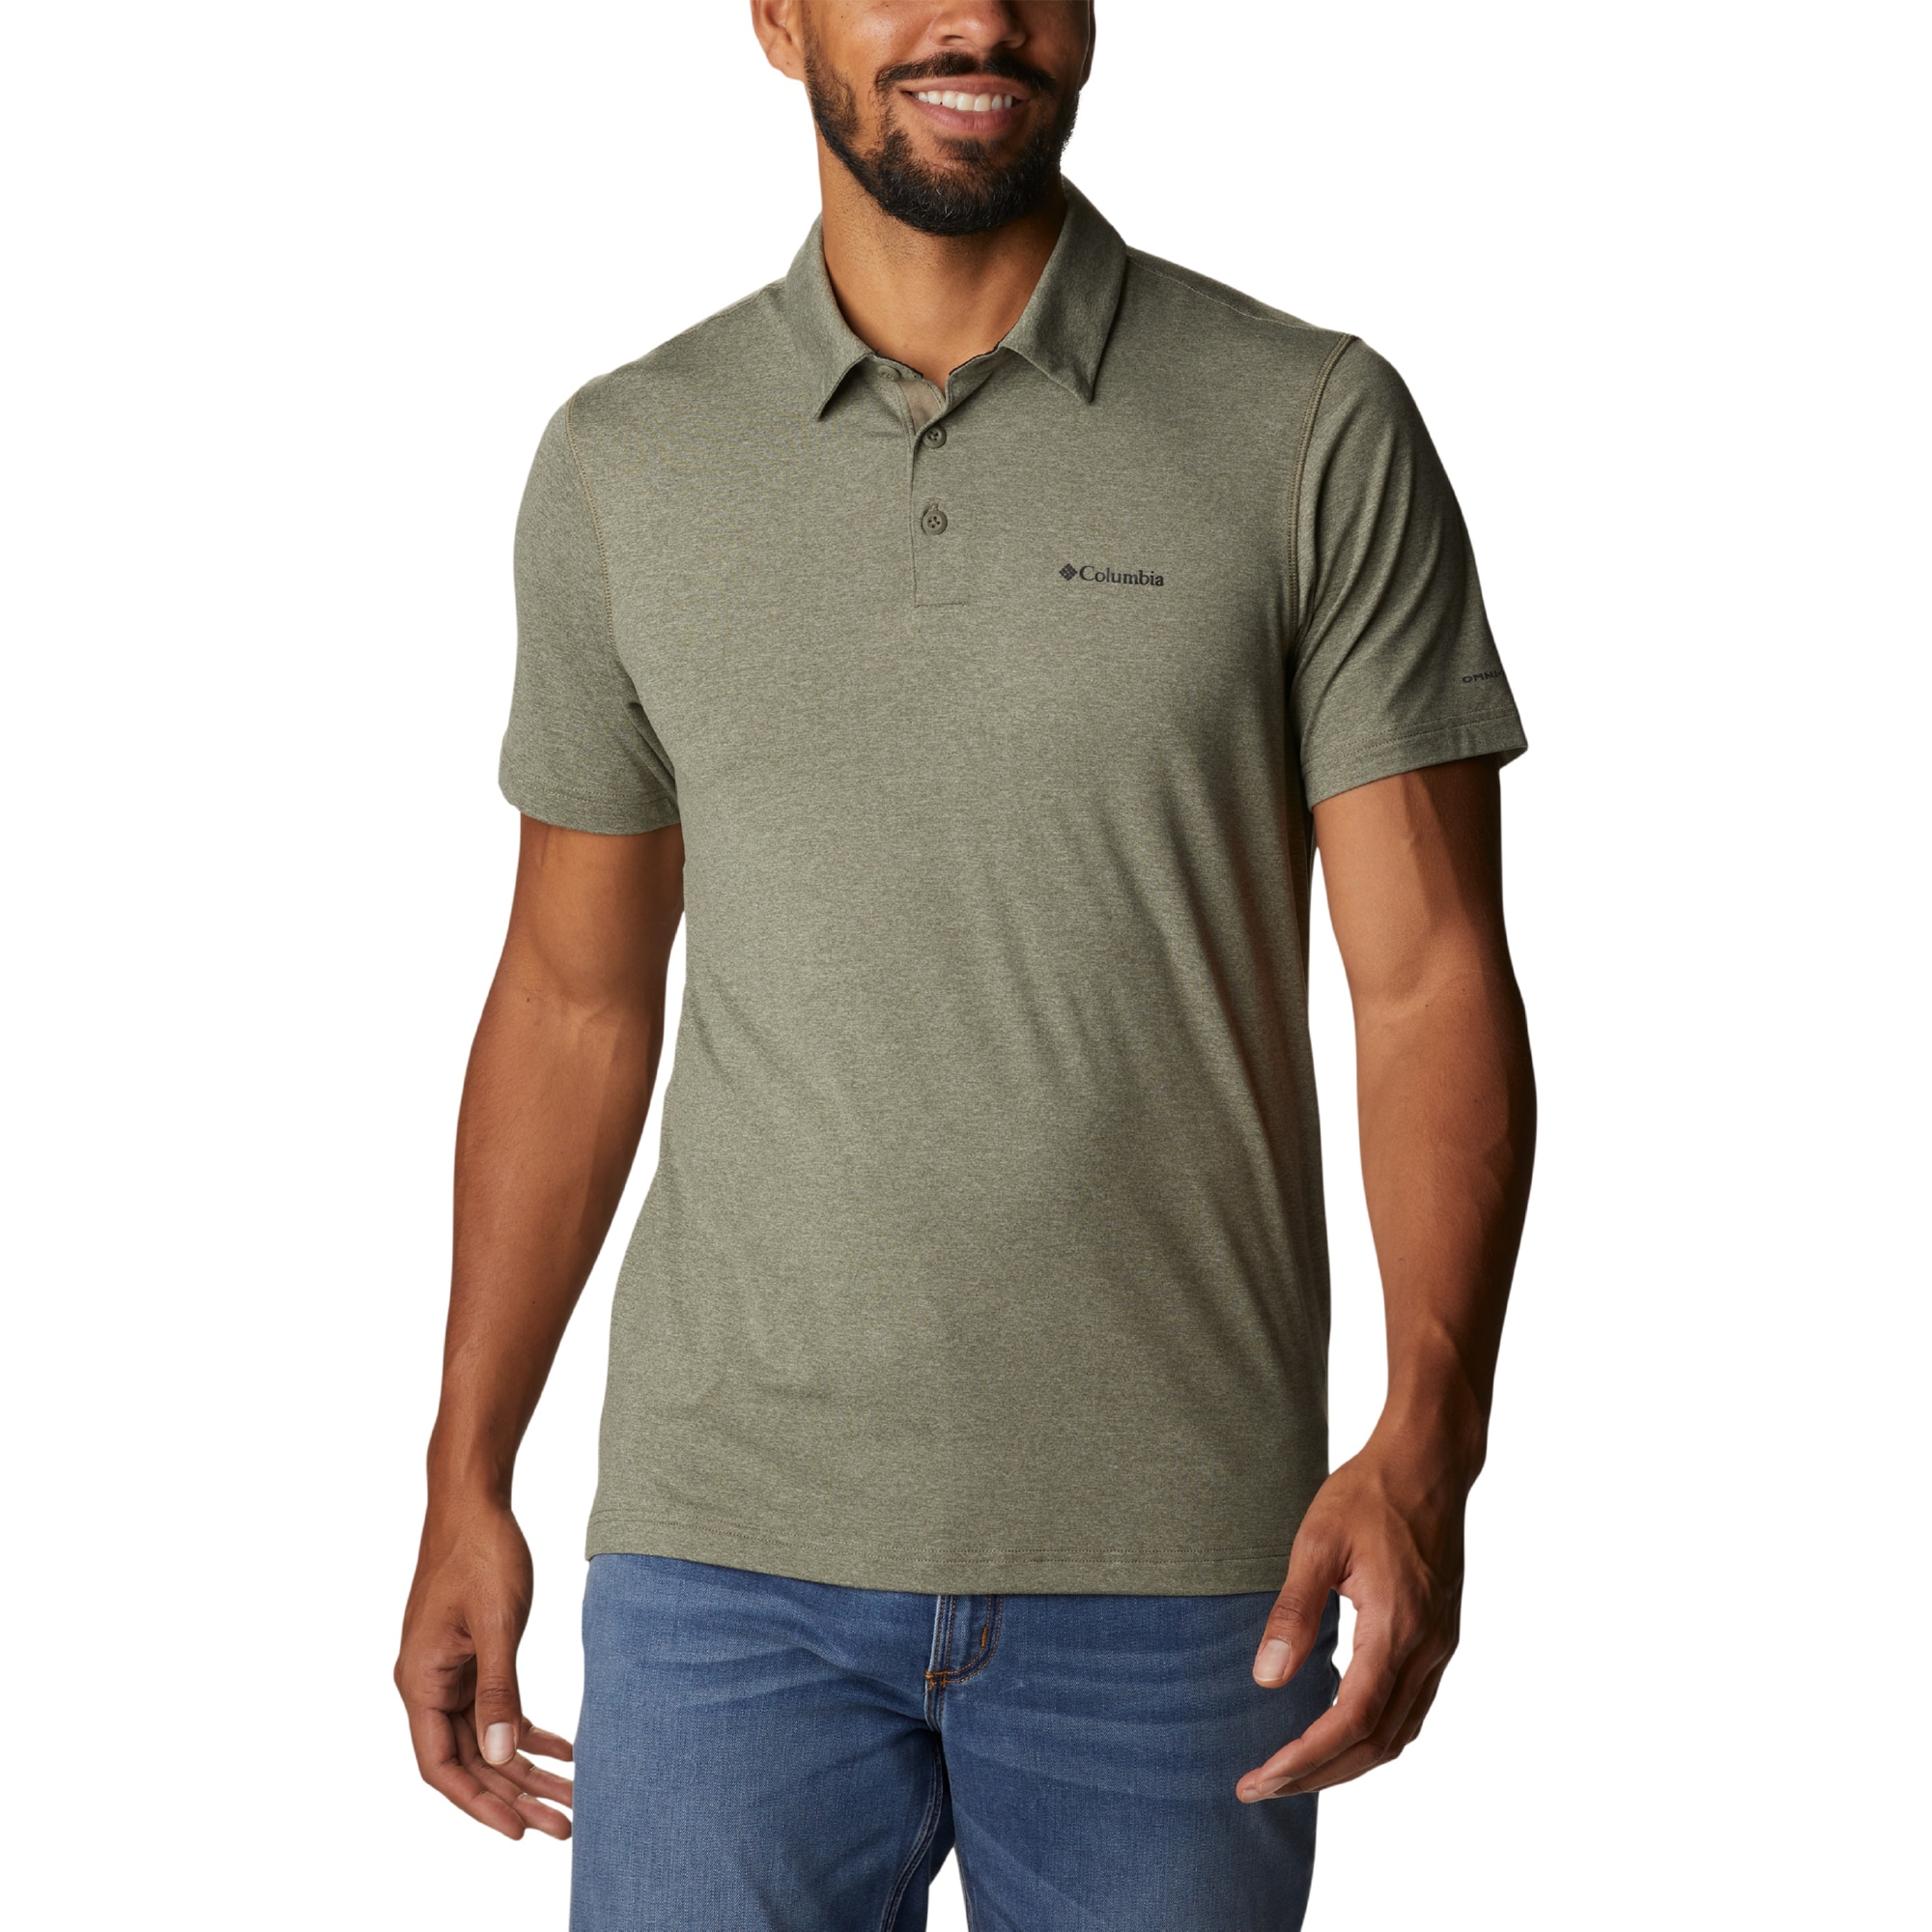 Men's Tech Trail Polo Shirt